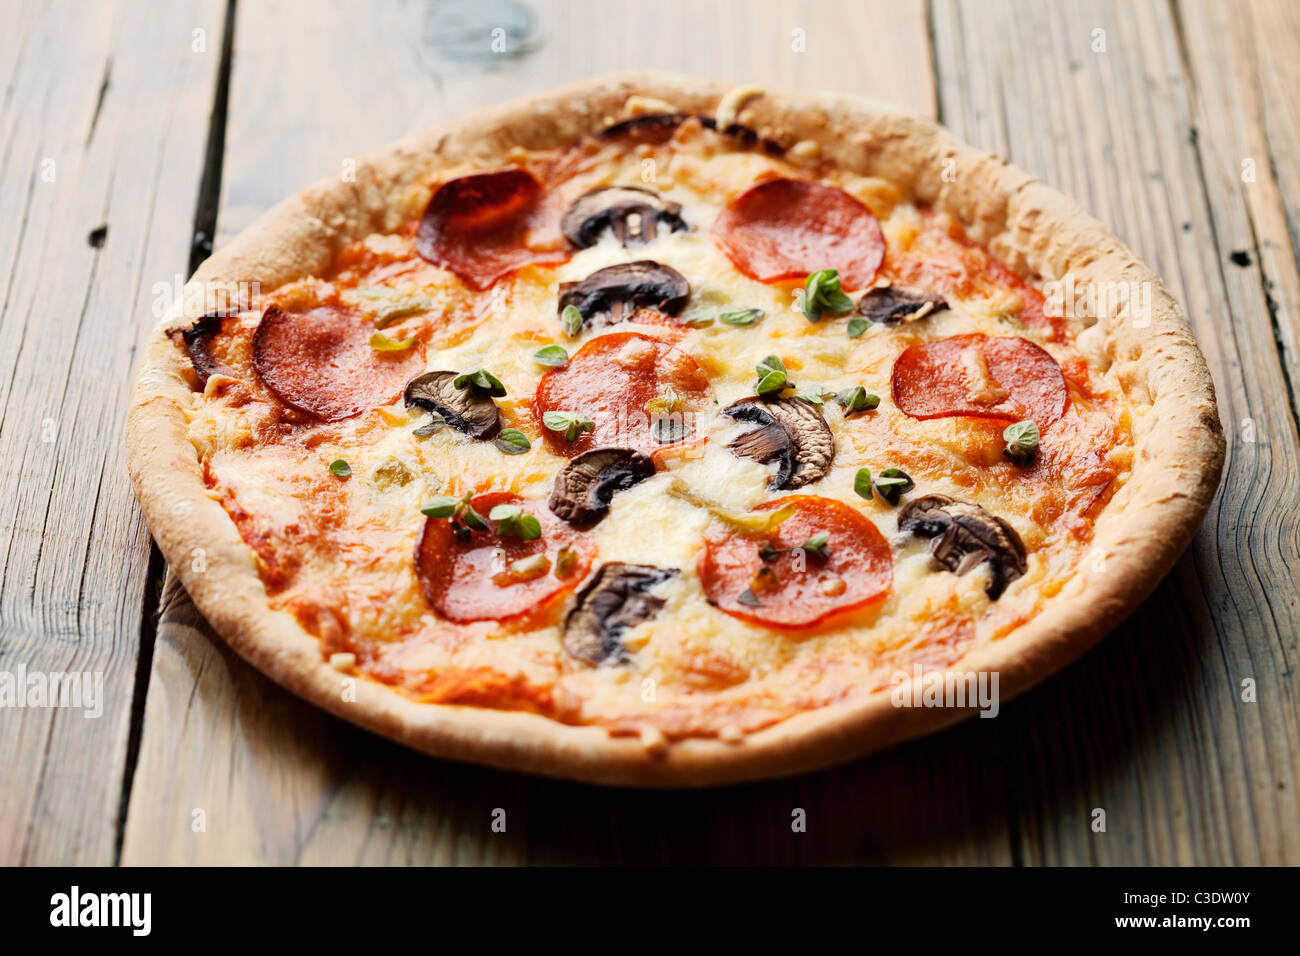 pepperoni and mushrooom pizza on rustic table Stock Photo